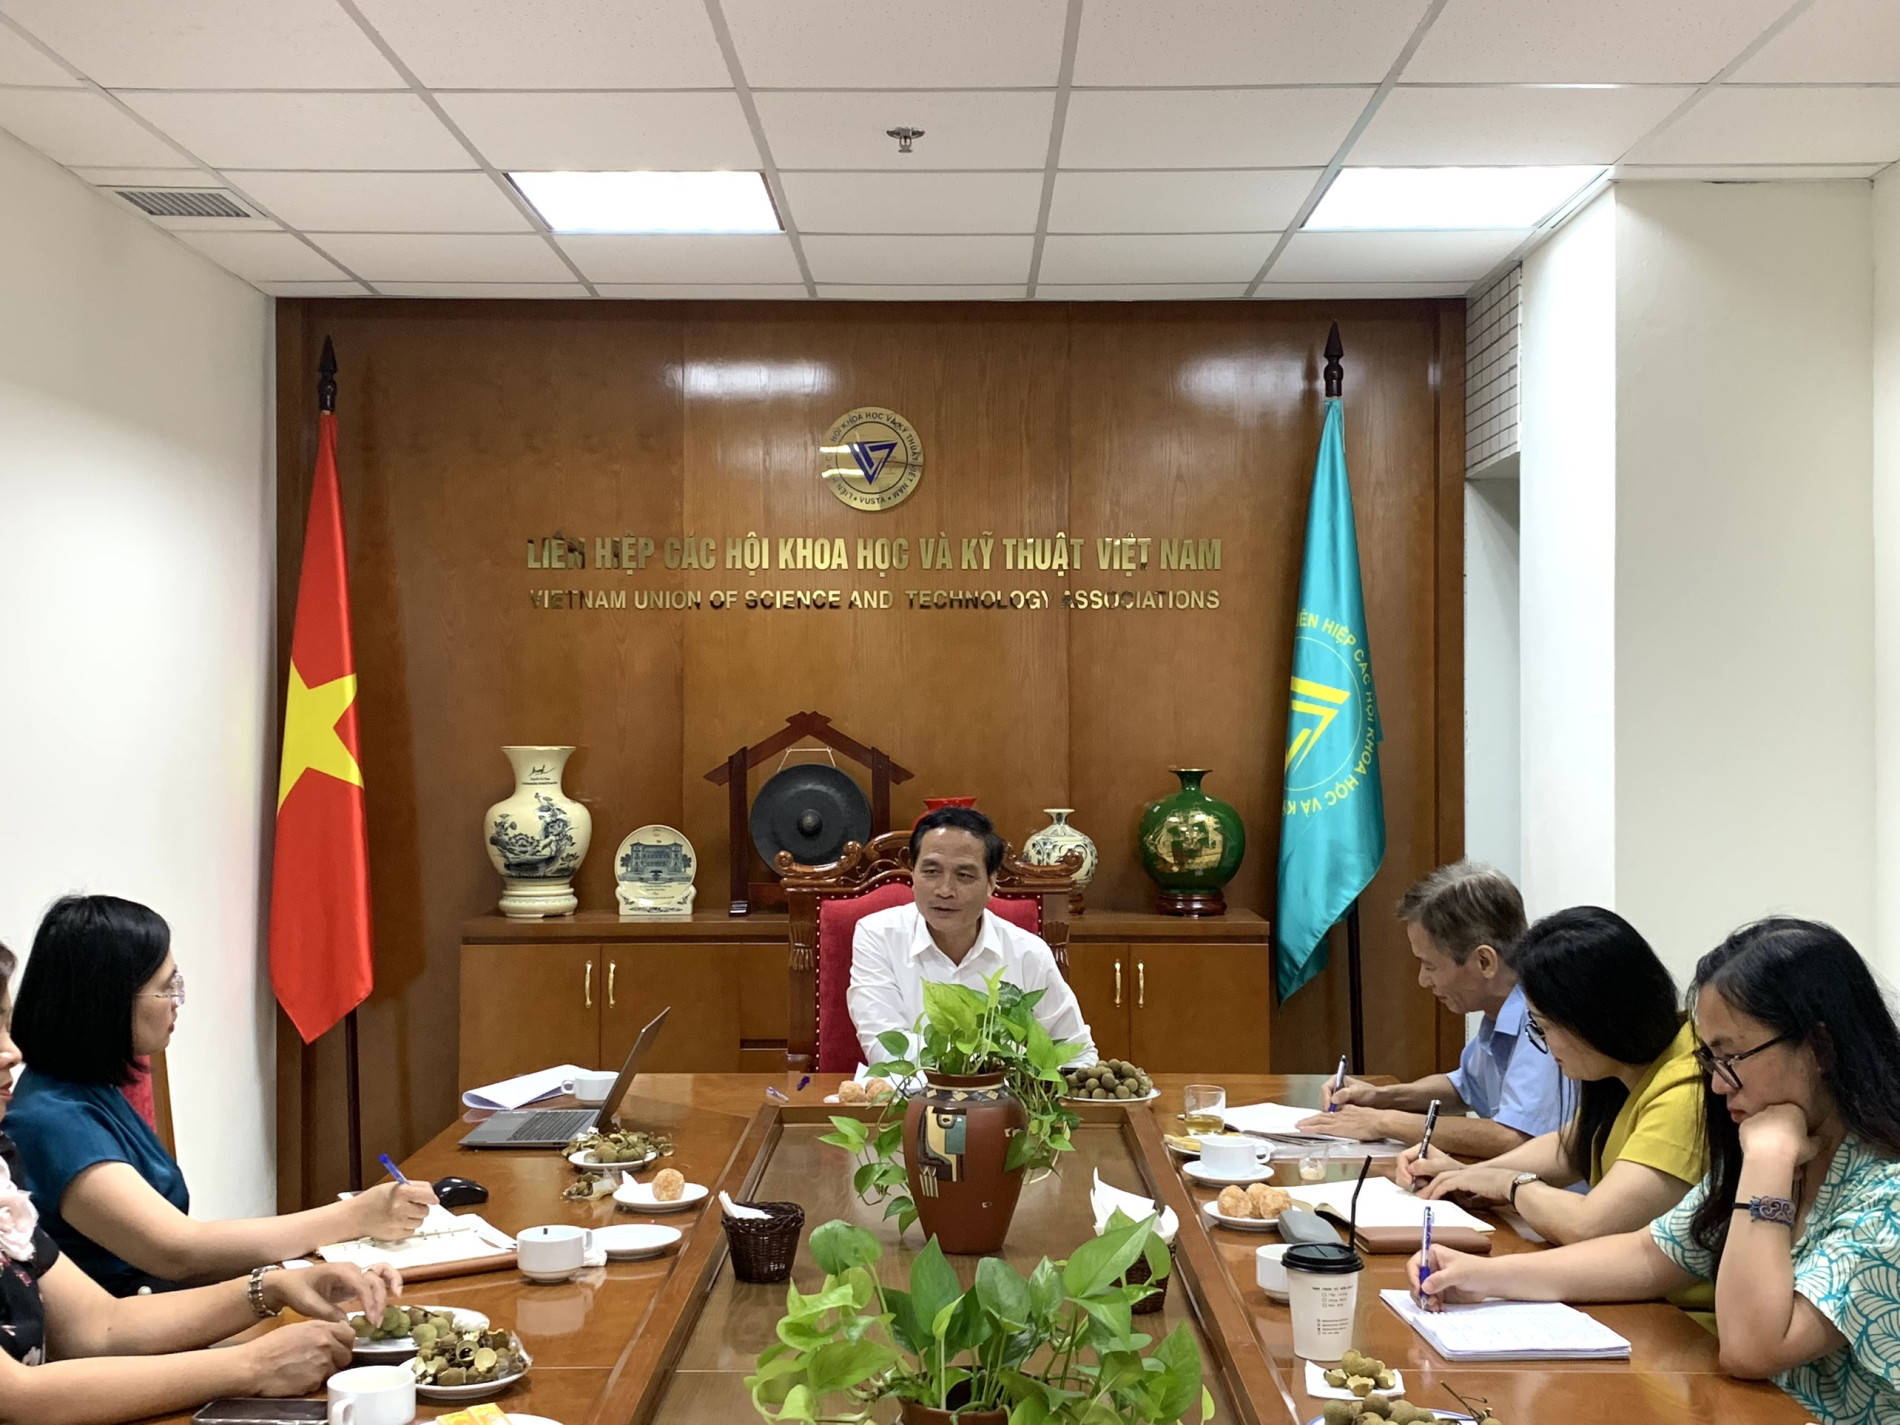 Phó Chủ tịch Liên hiệp các Hội Khoa học và Kỹ thuật Việt Nam Phạm Ngọc Linh làm việc với Nhà xuất bản Tri thức